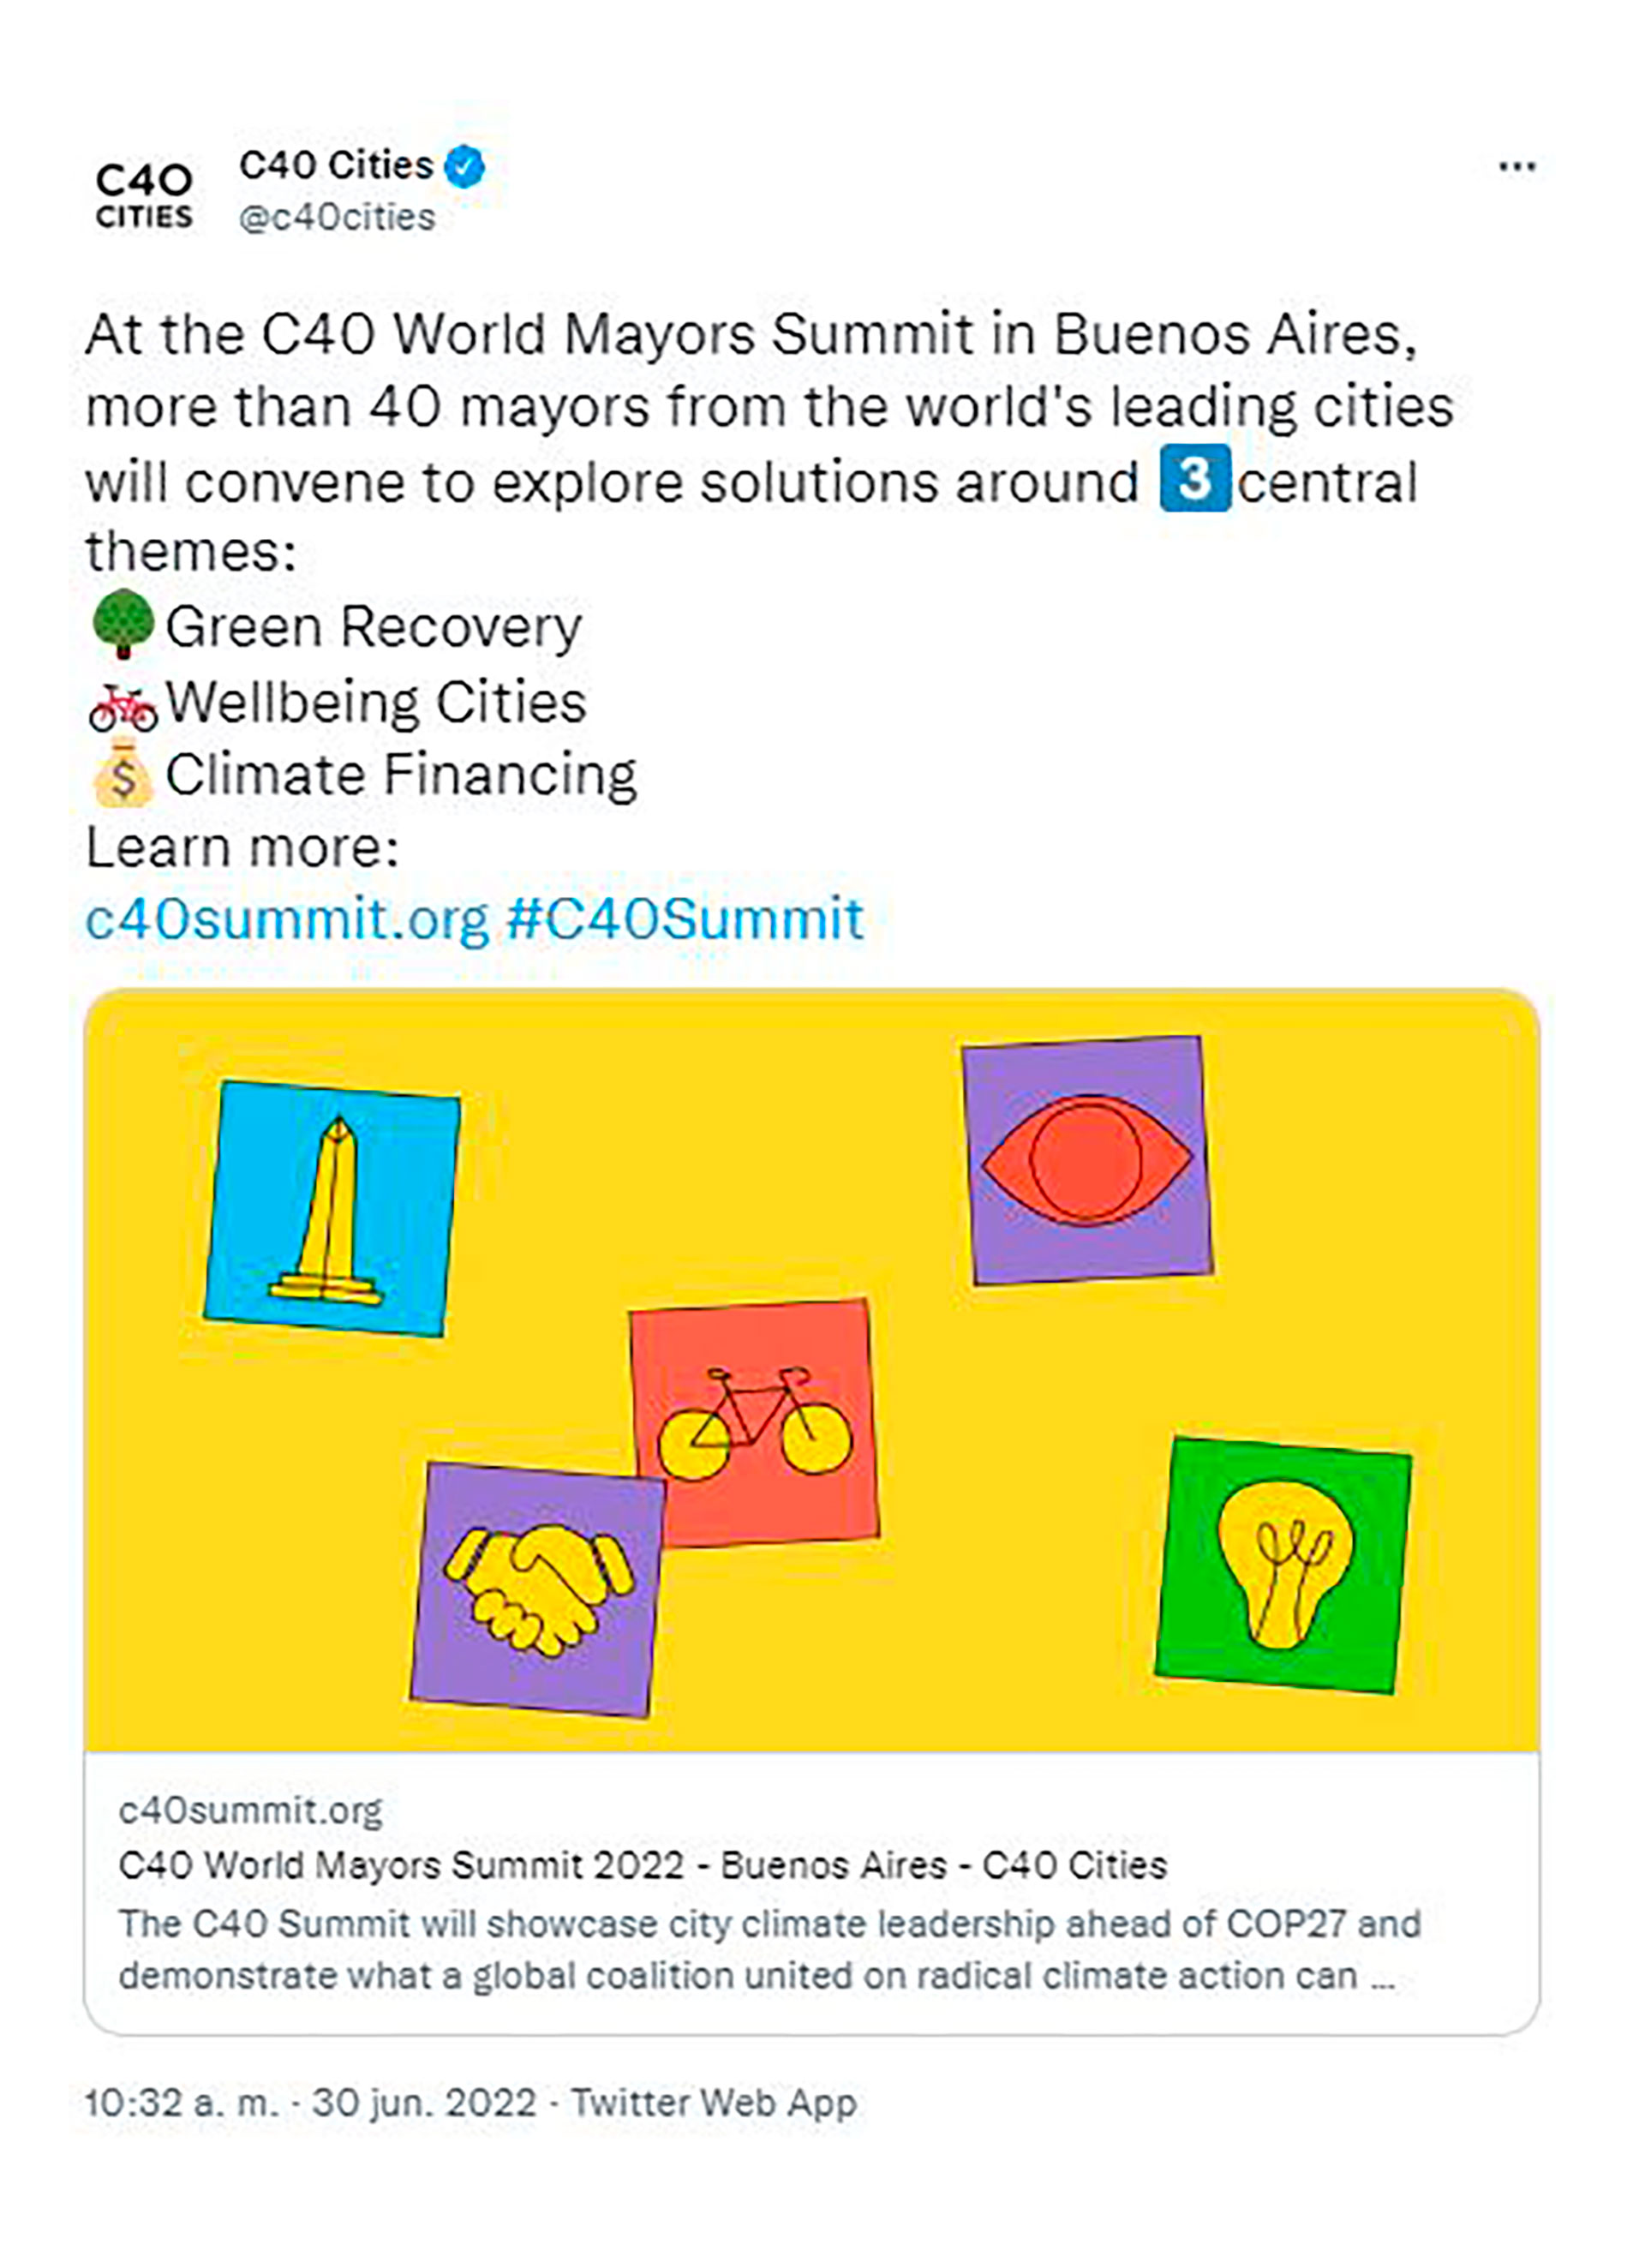 El anuncio de C40 Cities